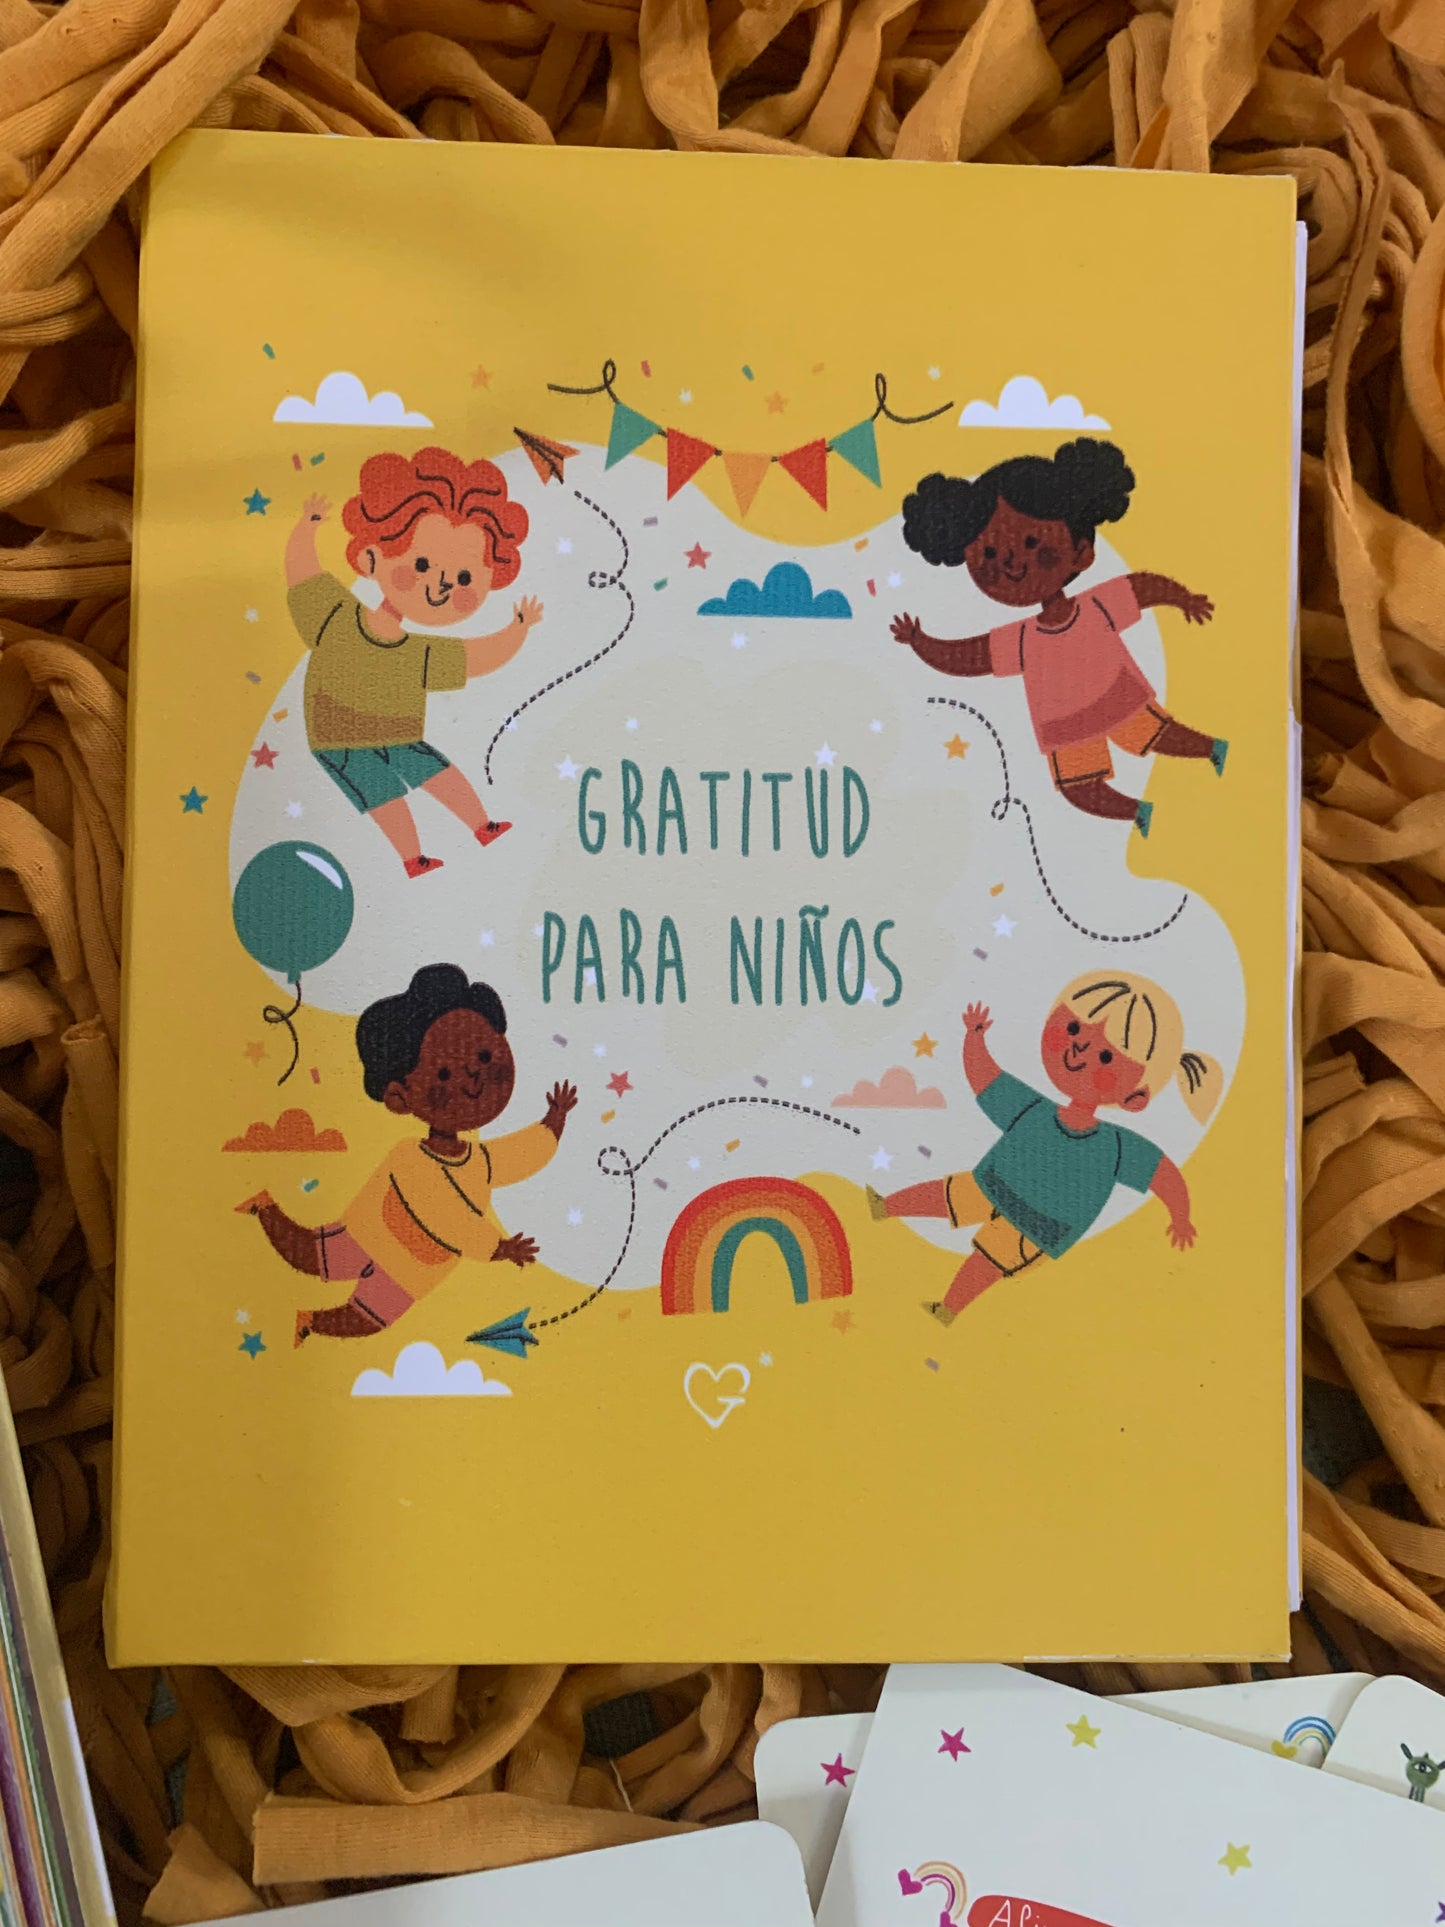 Diario de Gratitud para NIÑOS